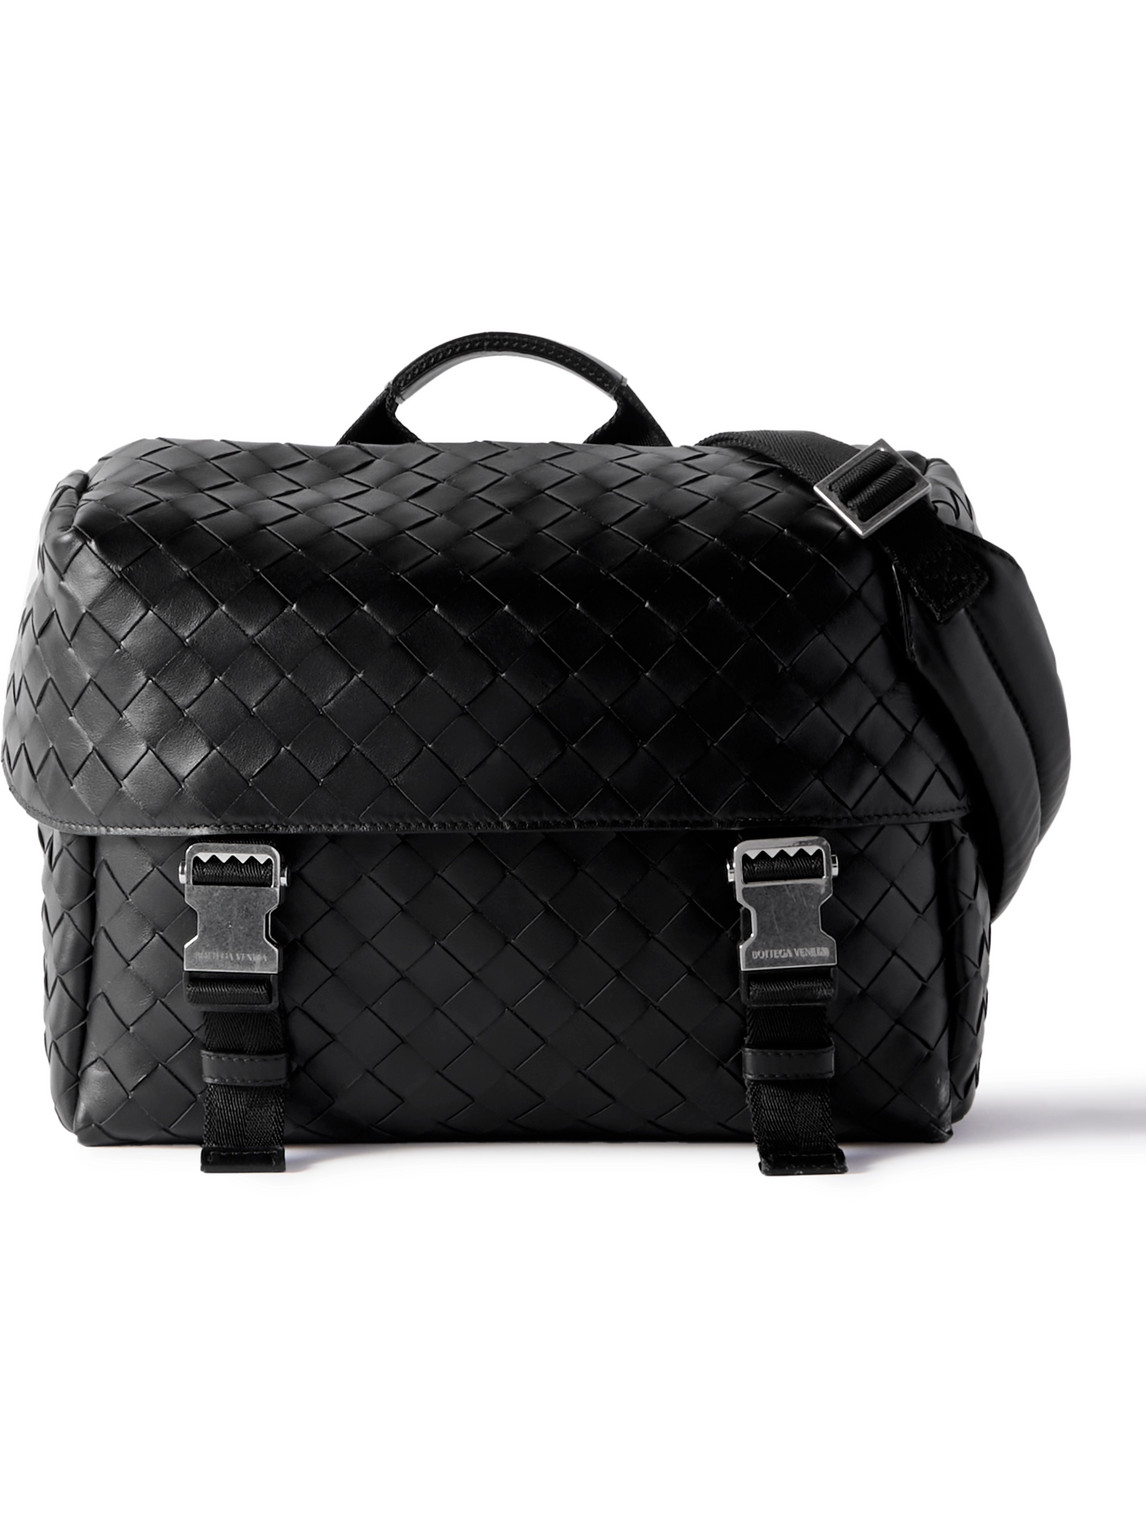 Bottega Veneta Intrecciato Leather Messenger Bag In Black